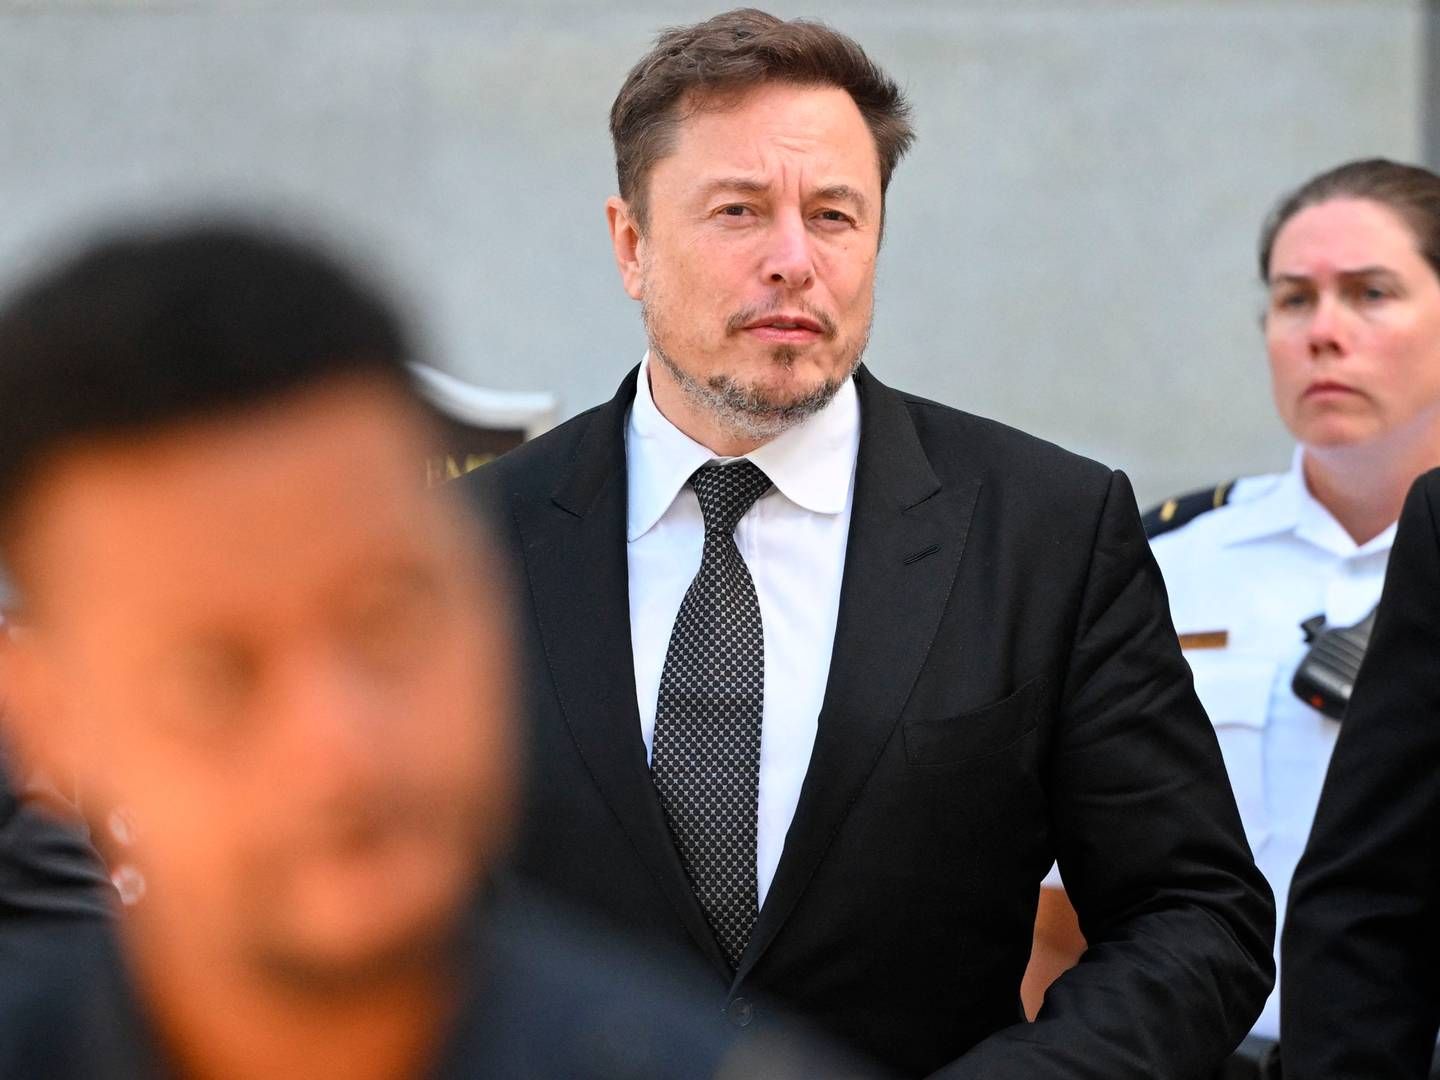 Efter at have købt det sociale medie Twitter har Elon Musk omdøbt det til X. I en rapport fra EU-Kommissionen får X kritik for sin håndtering af misinformation. | Foto: Mandel Ngan